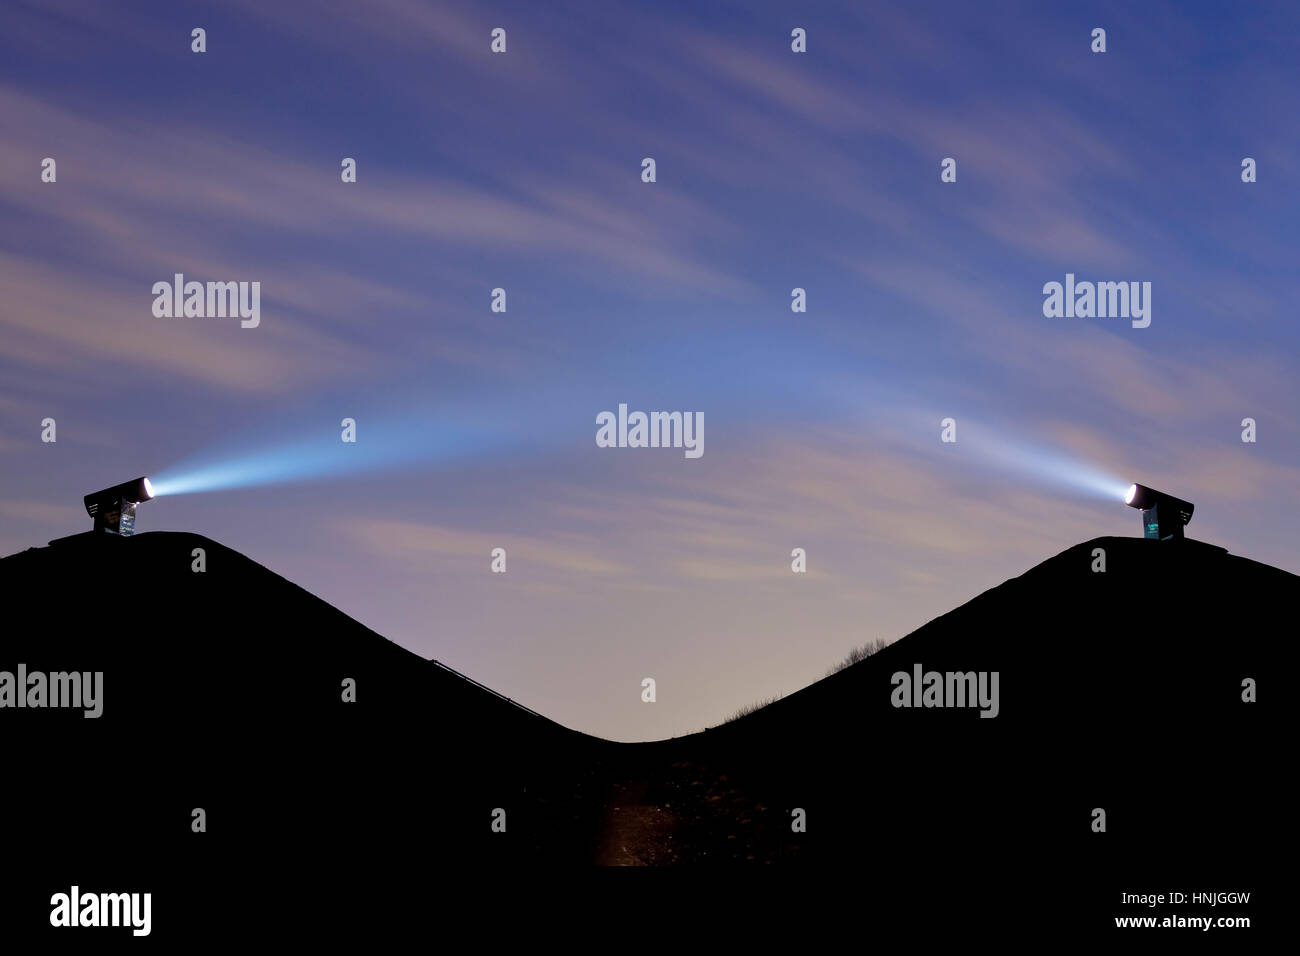 Deutschland, Ruhrgebiet, Gelsenkirchen, Heap Rungenberg, zwei Laser-Flecken auf dem Heap erhellt den Himmel bei Nacht, leichte Installation Nachtzeichen. Stockfoto